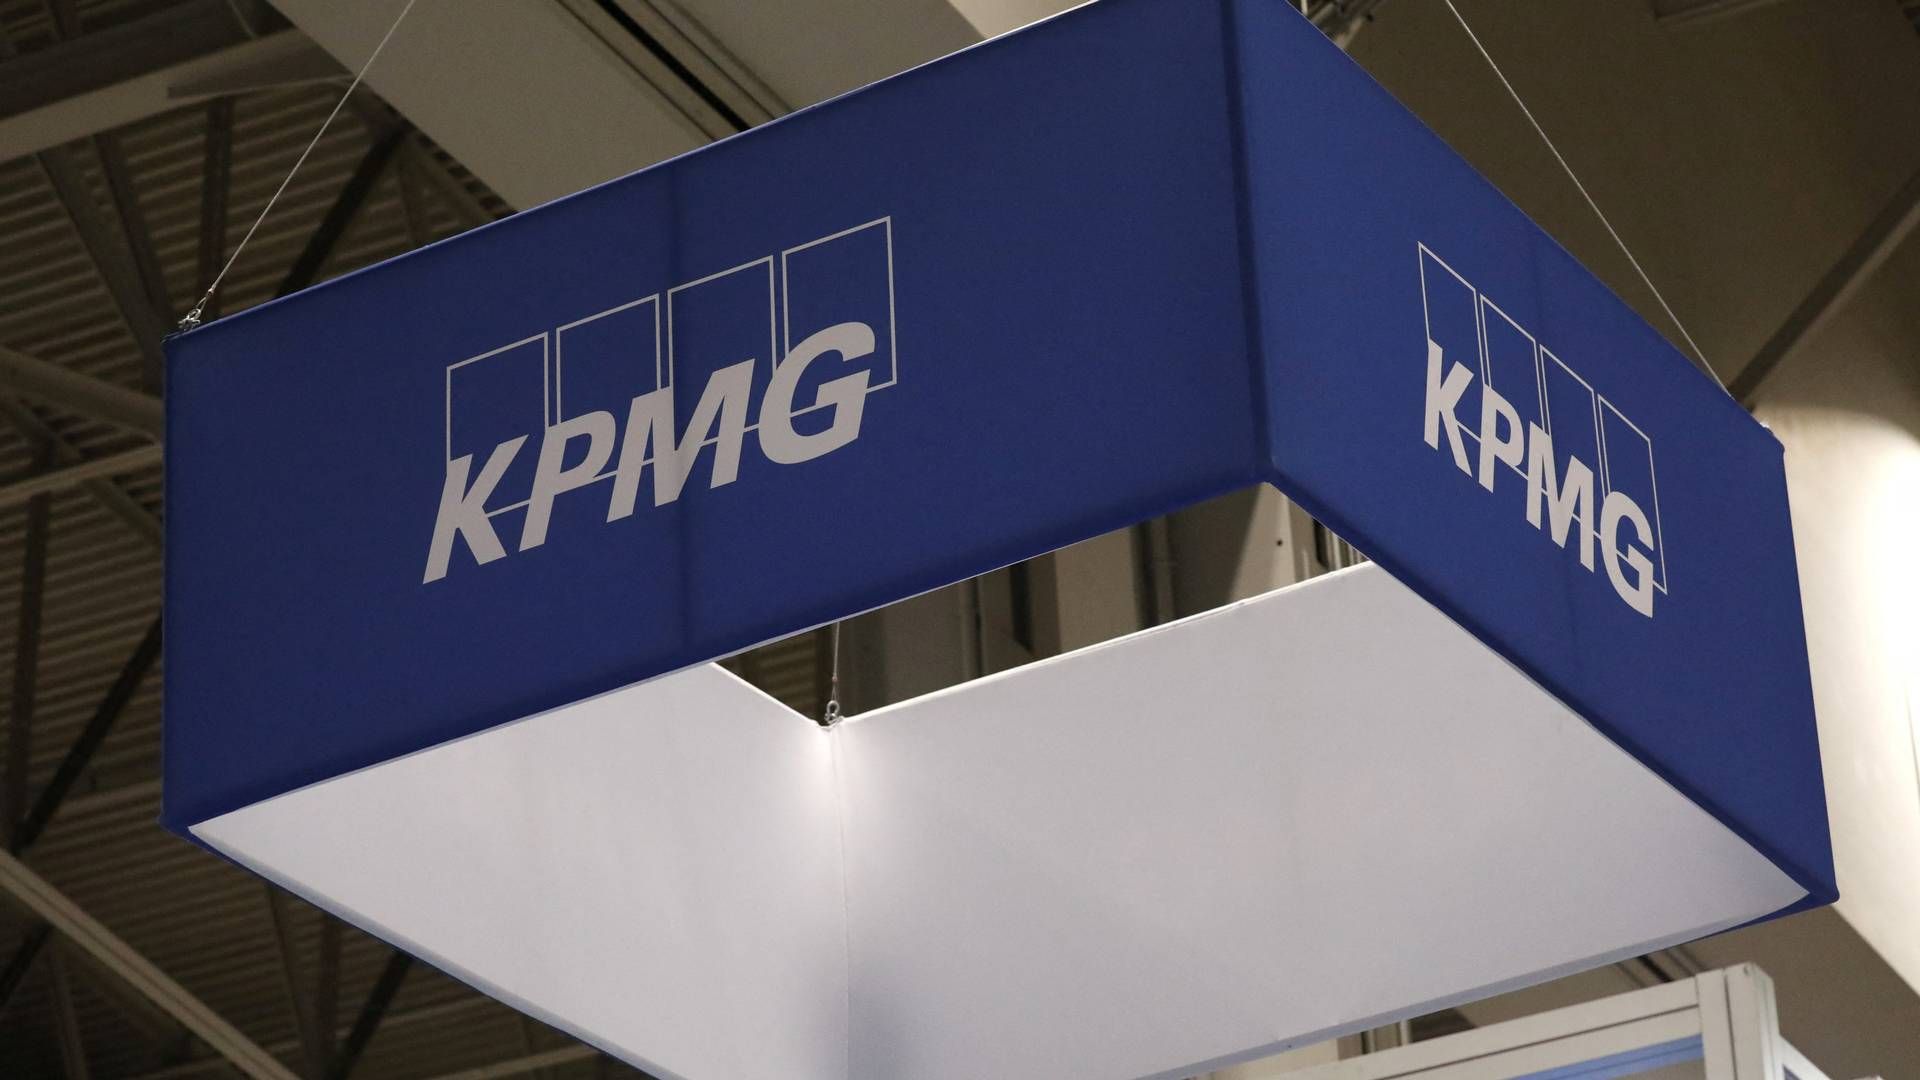 KPMG opererer i 143 lande, og revisions- og konsulentvirksomheden har i alt mere end 265.000 ansatte på verdensplan. | Foto: Chris Helgren/Reuters/Ritzau Scanpix